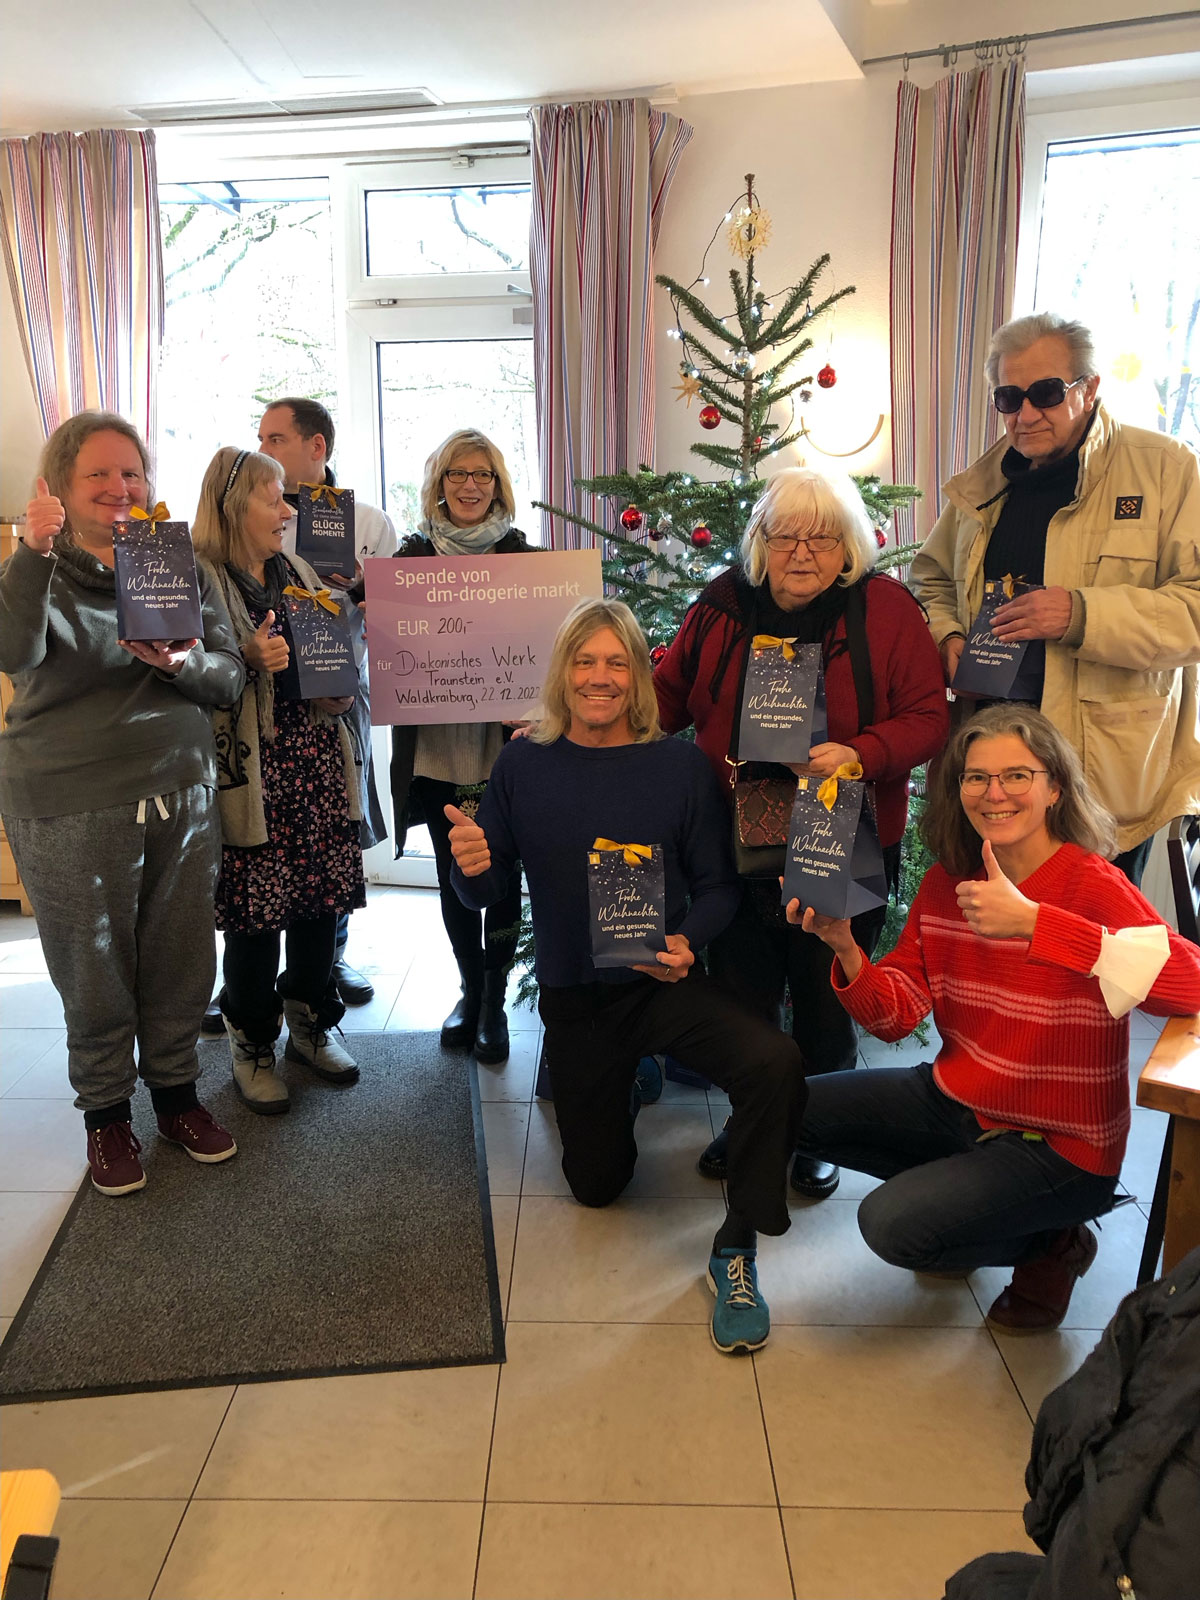 Besucher und Mitarbeitende des Tageszentrums Waldkraiburg freuen sich über die Weihnachtsgeschenke